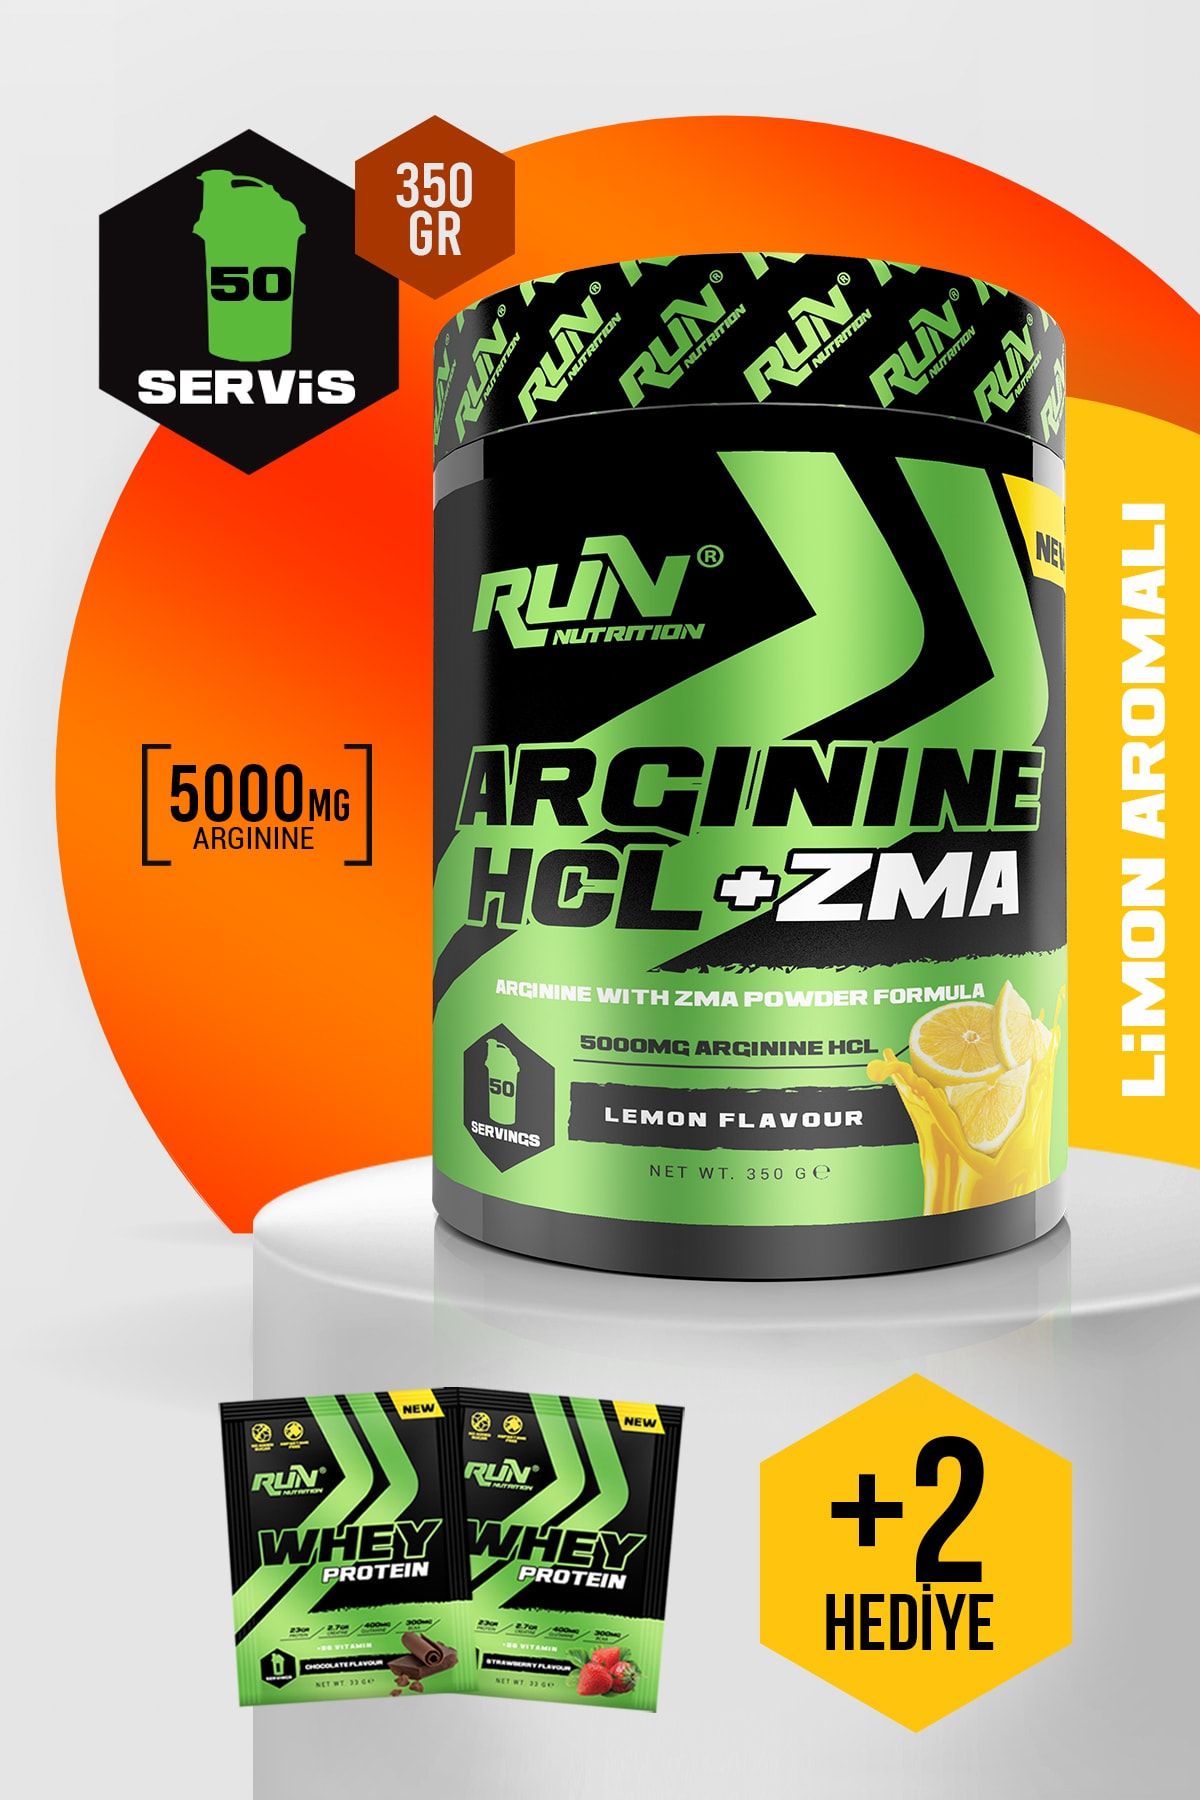 Run Nutrition Arginine HCL + ZMA - Limon Aromalı - 50 Servis - 350g - 2 Saşe Protein Hediyeli